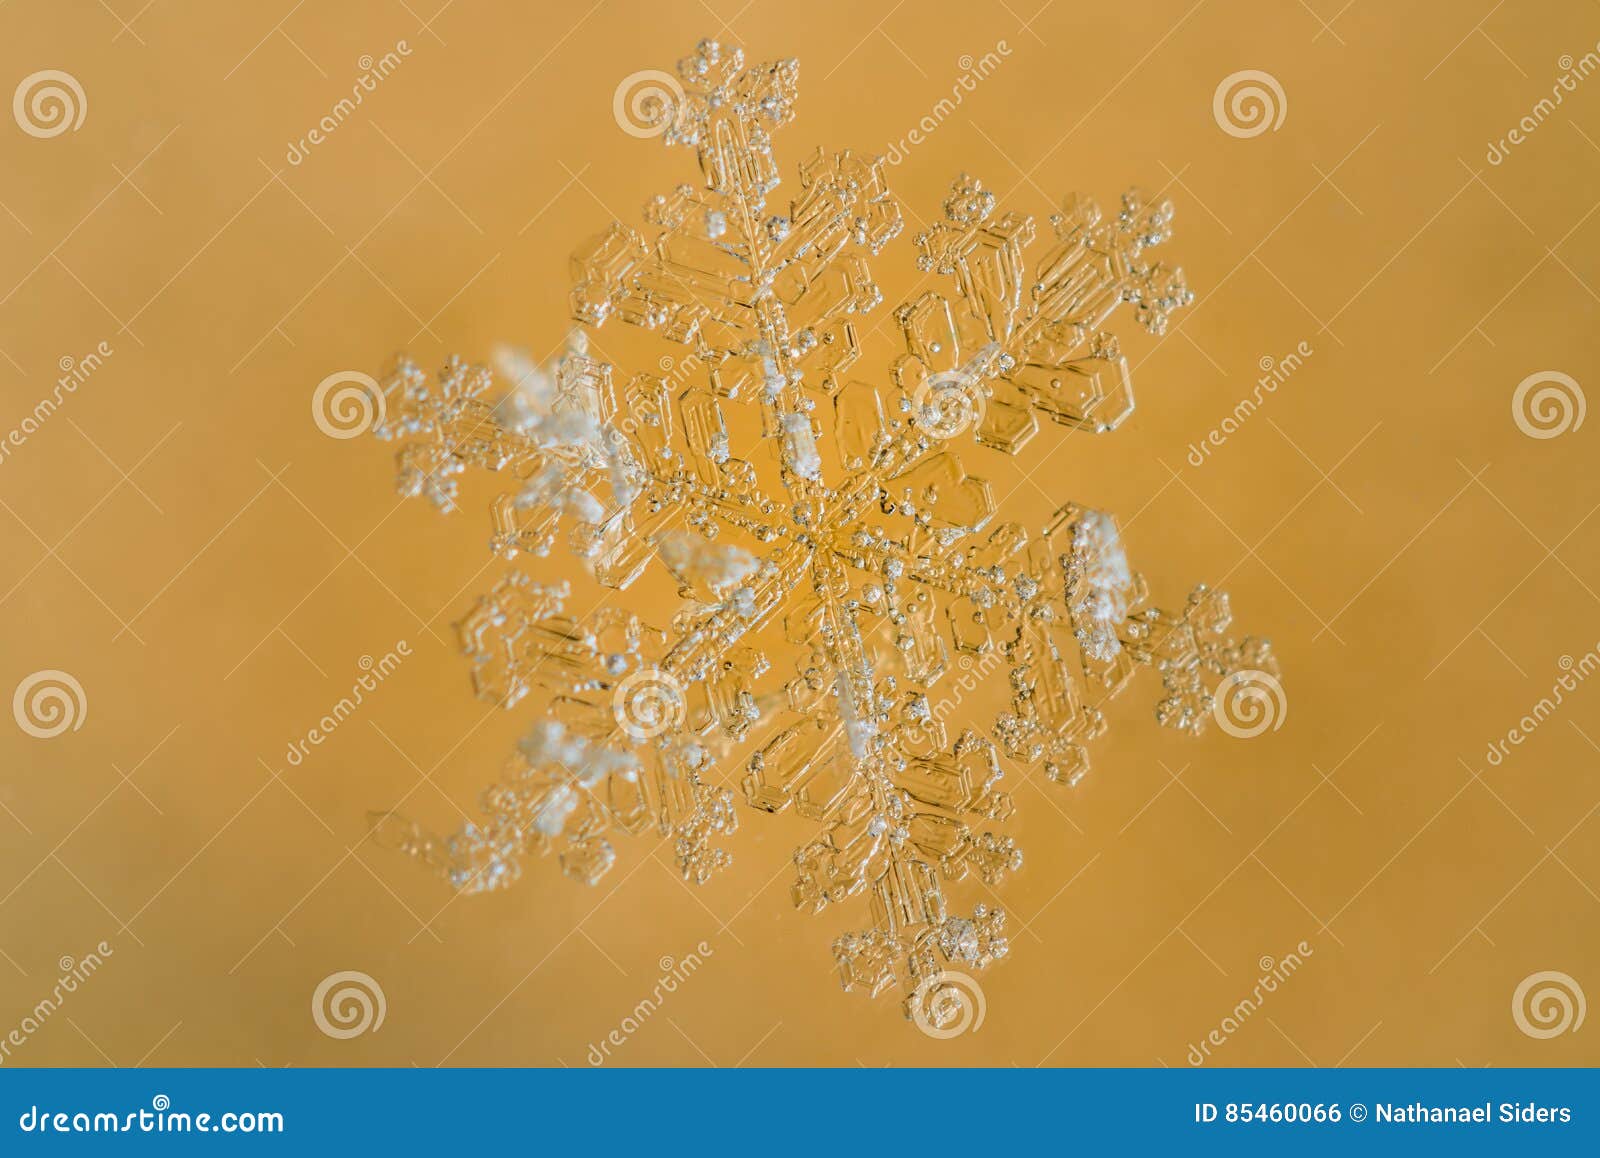 Fiocco di neve con fondo giallo. Immagine del primo piano di un fiocco di neve con un fondo giallo